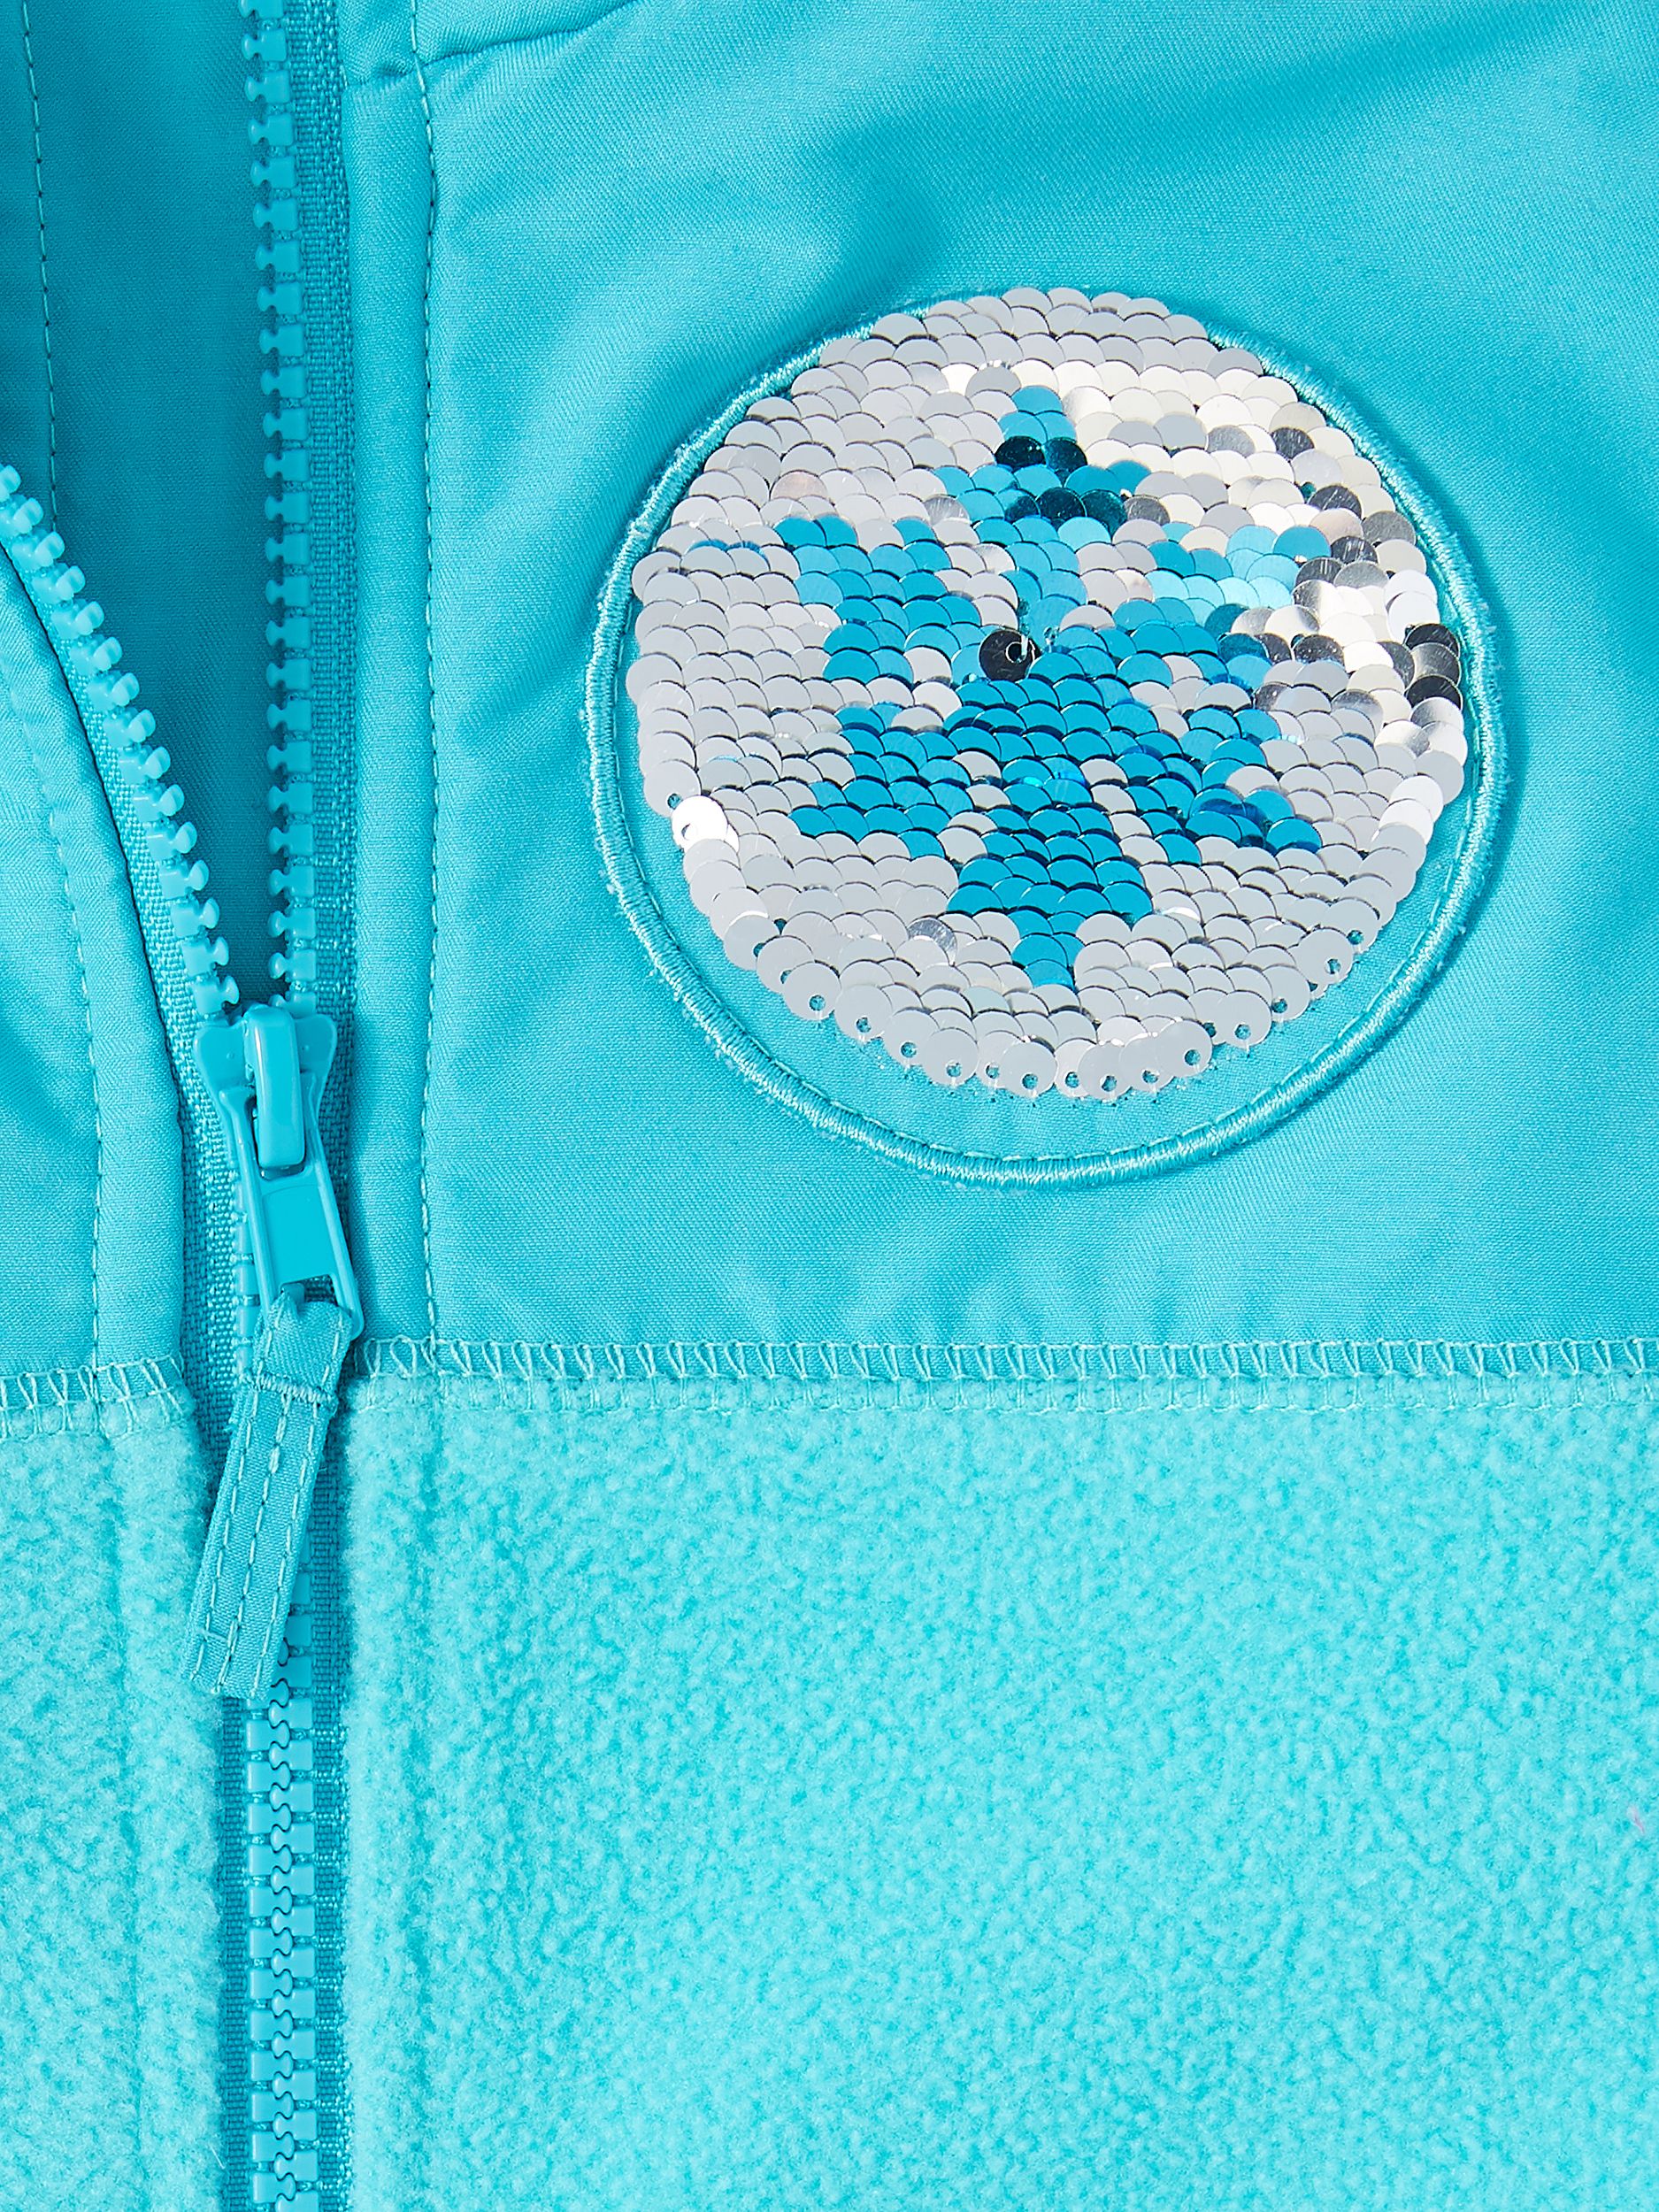 Frozen Girls Reversible Flip Sequin Polar Fleece Jacket, sizes 4-6x - image 3 of 3